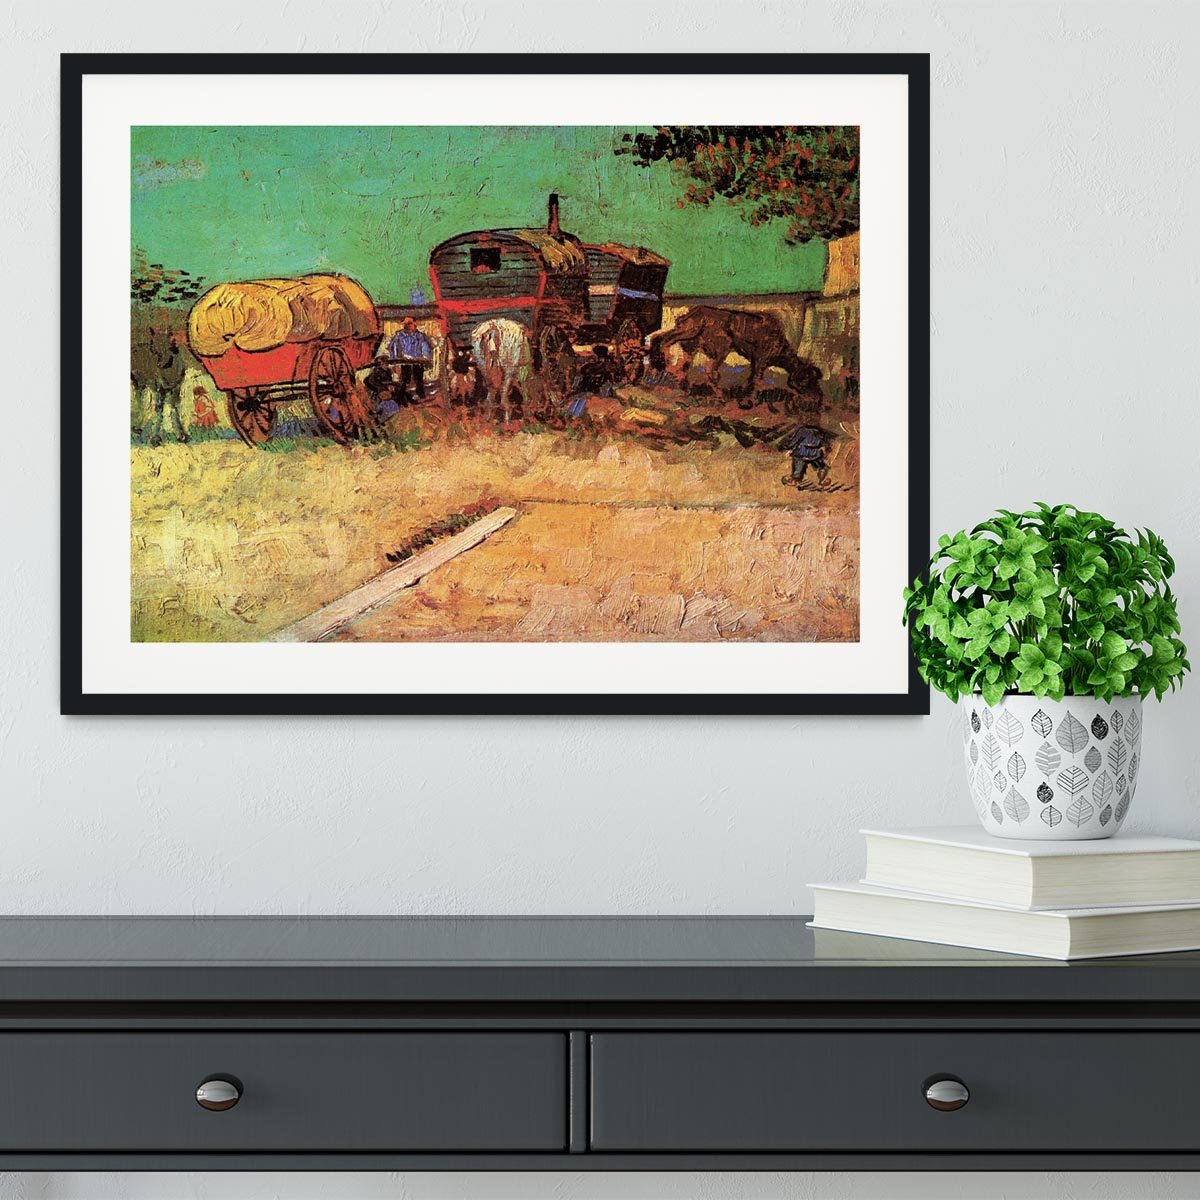 Encampment of Gypsies with Caravans by Van Gogh Framed Print - Canvas Art Rocks - 1